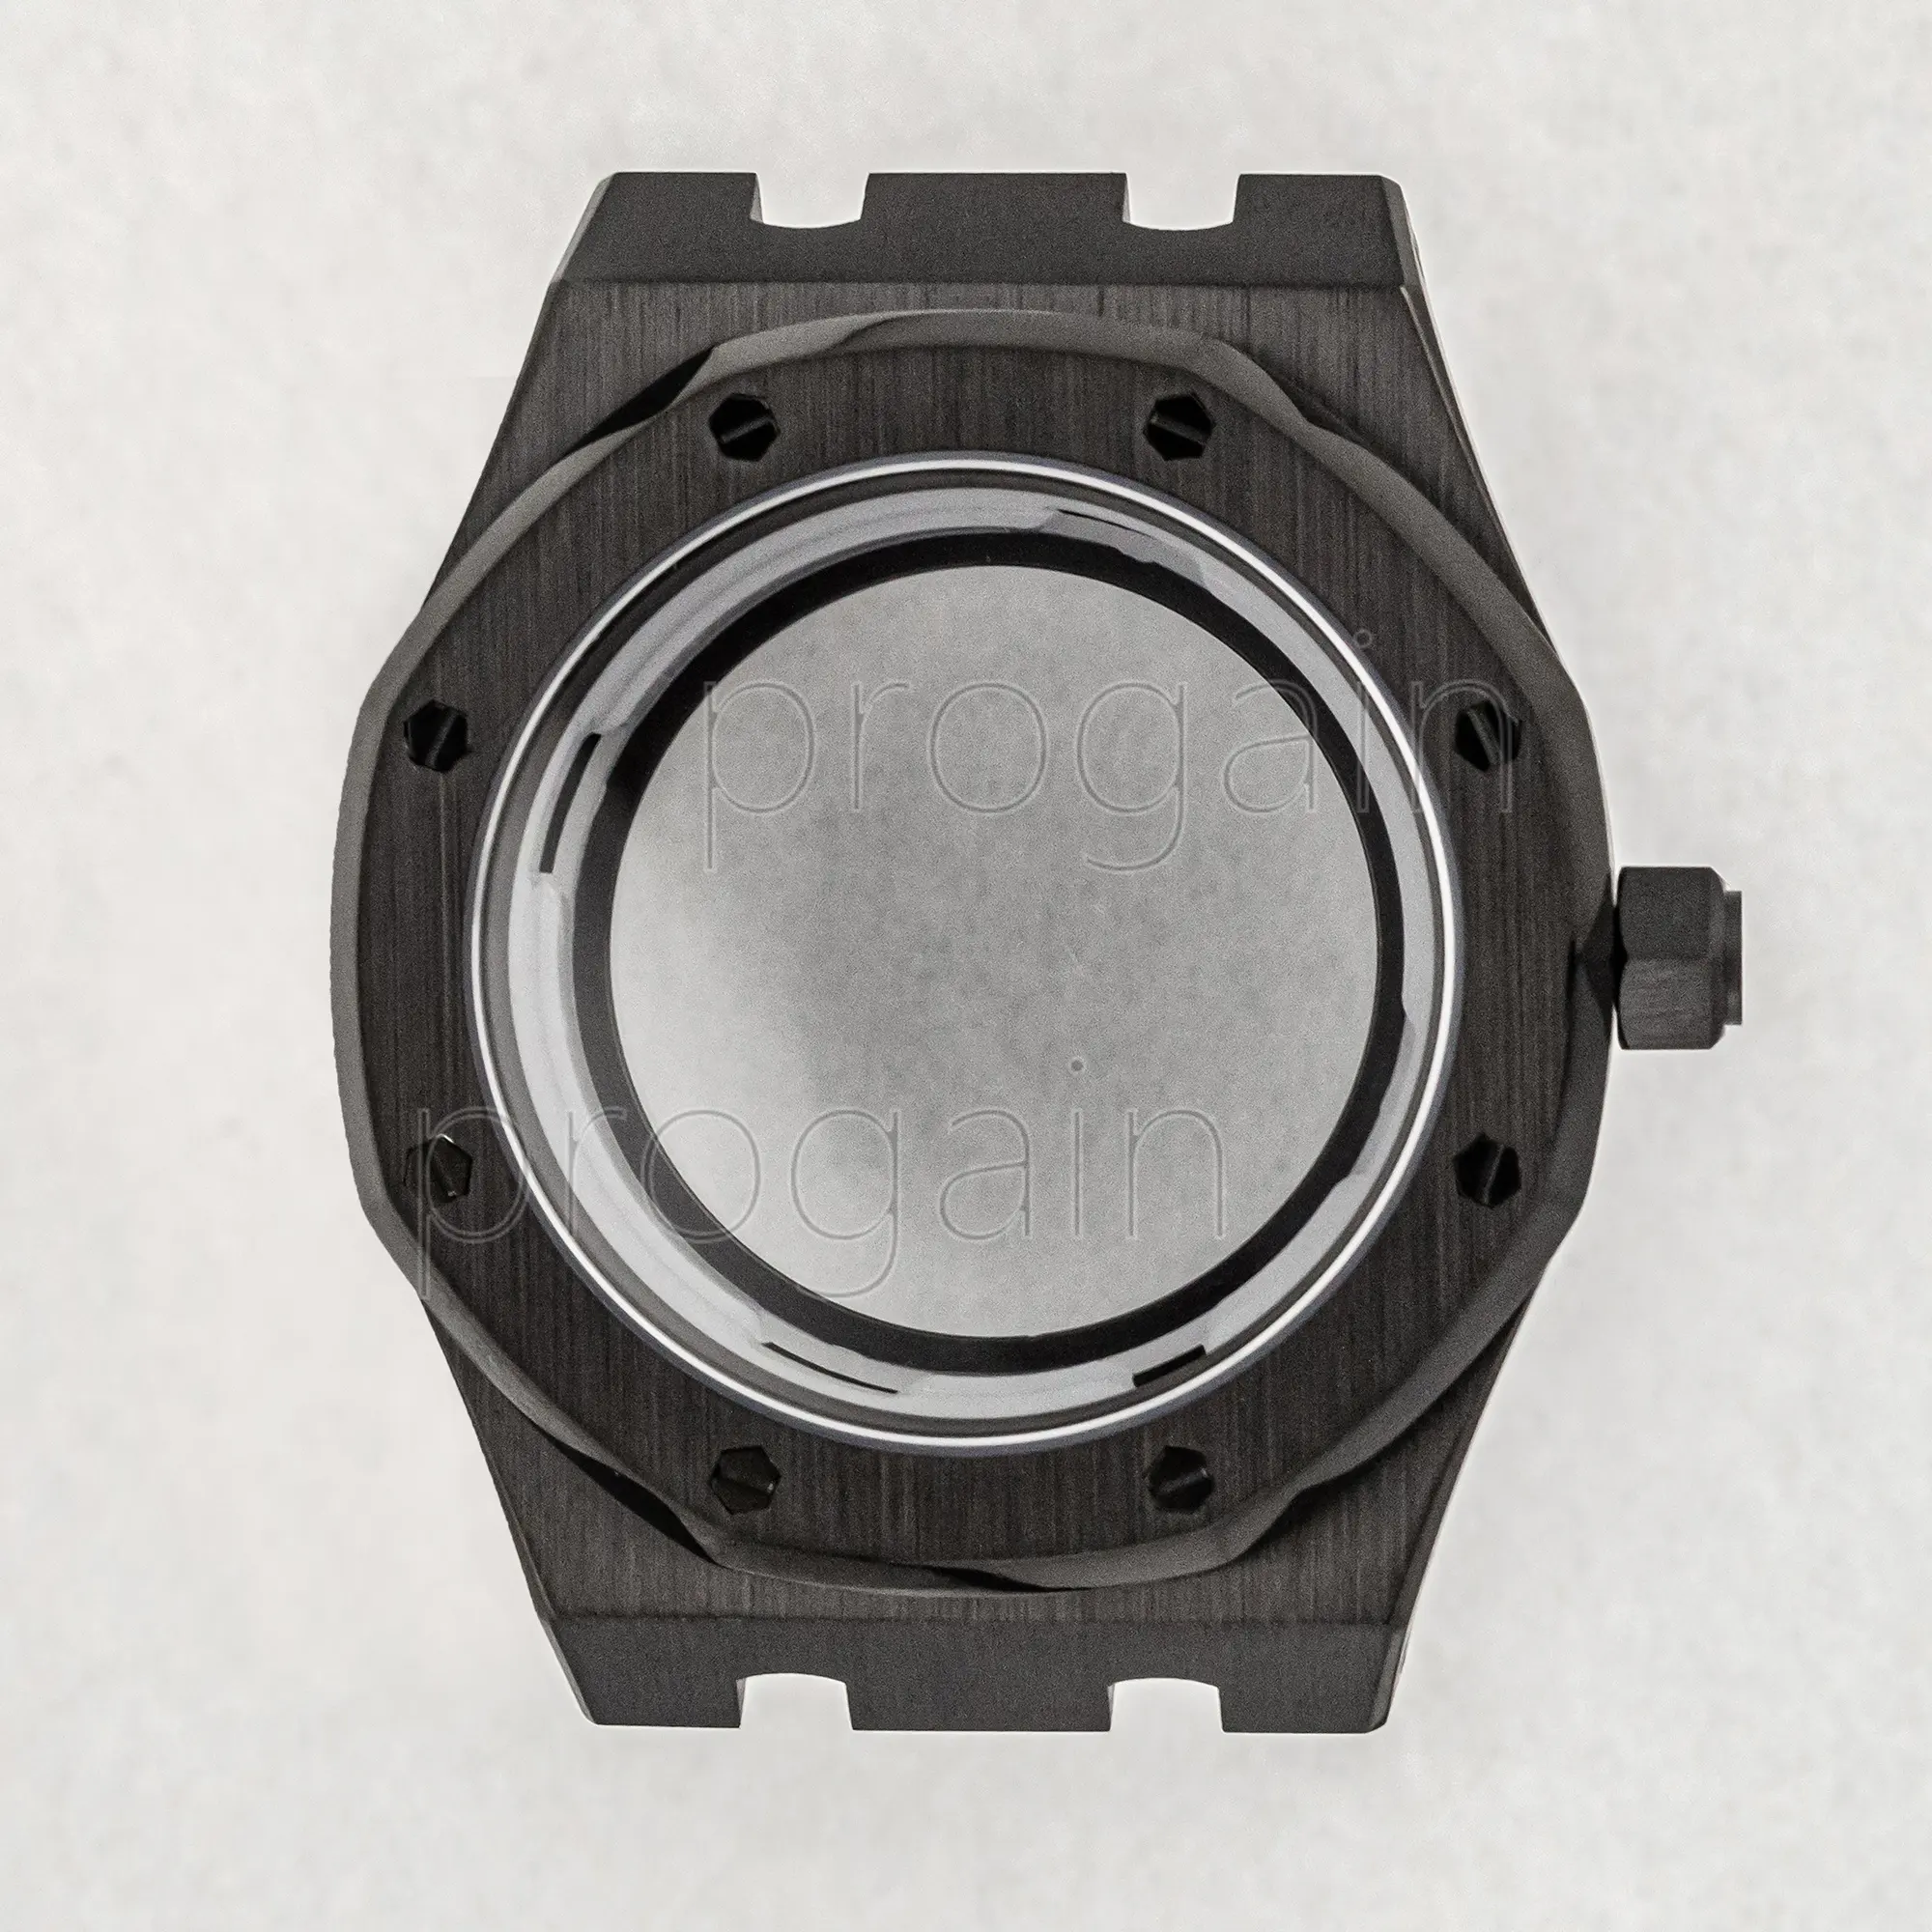 Caja de reloj negra de 42MM, accesorios modificados NH35, caja de reloj de movimiento mecánico, cristal de zafiro, compatible con esfera 31,8, resistente al agua